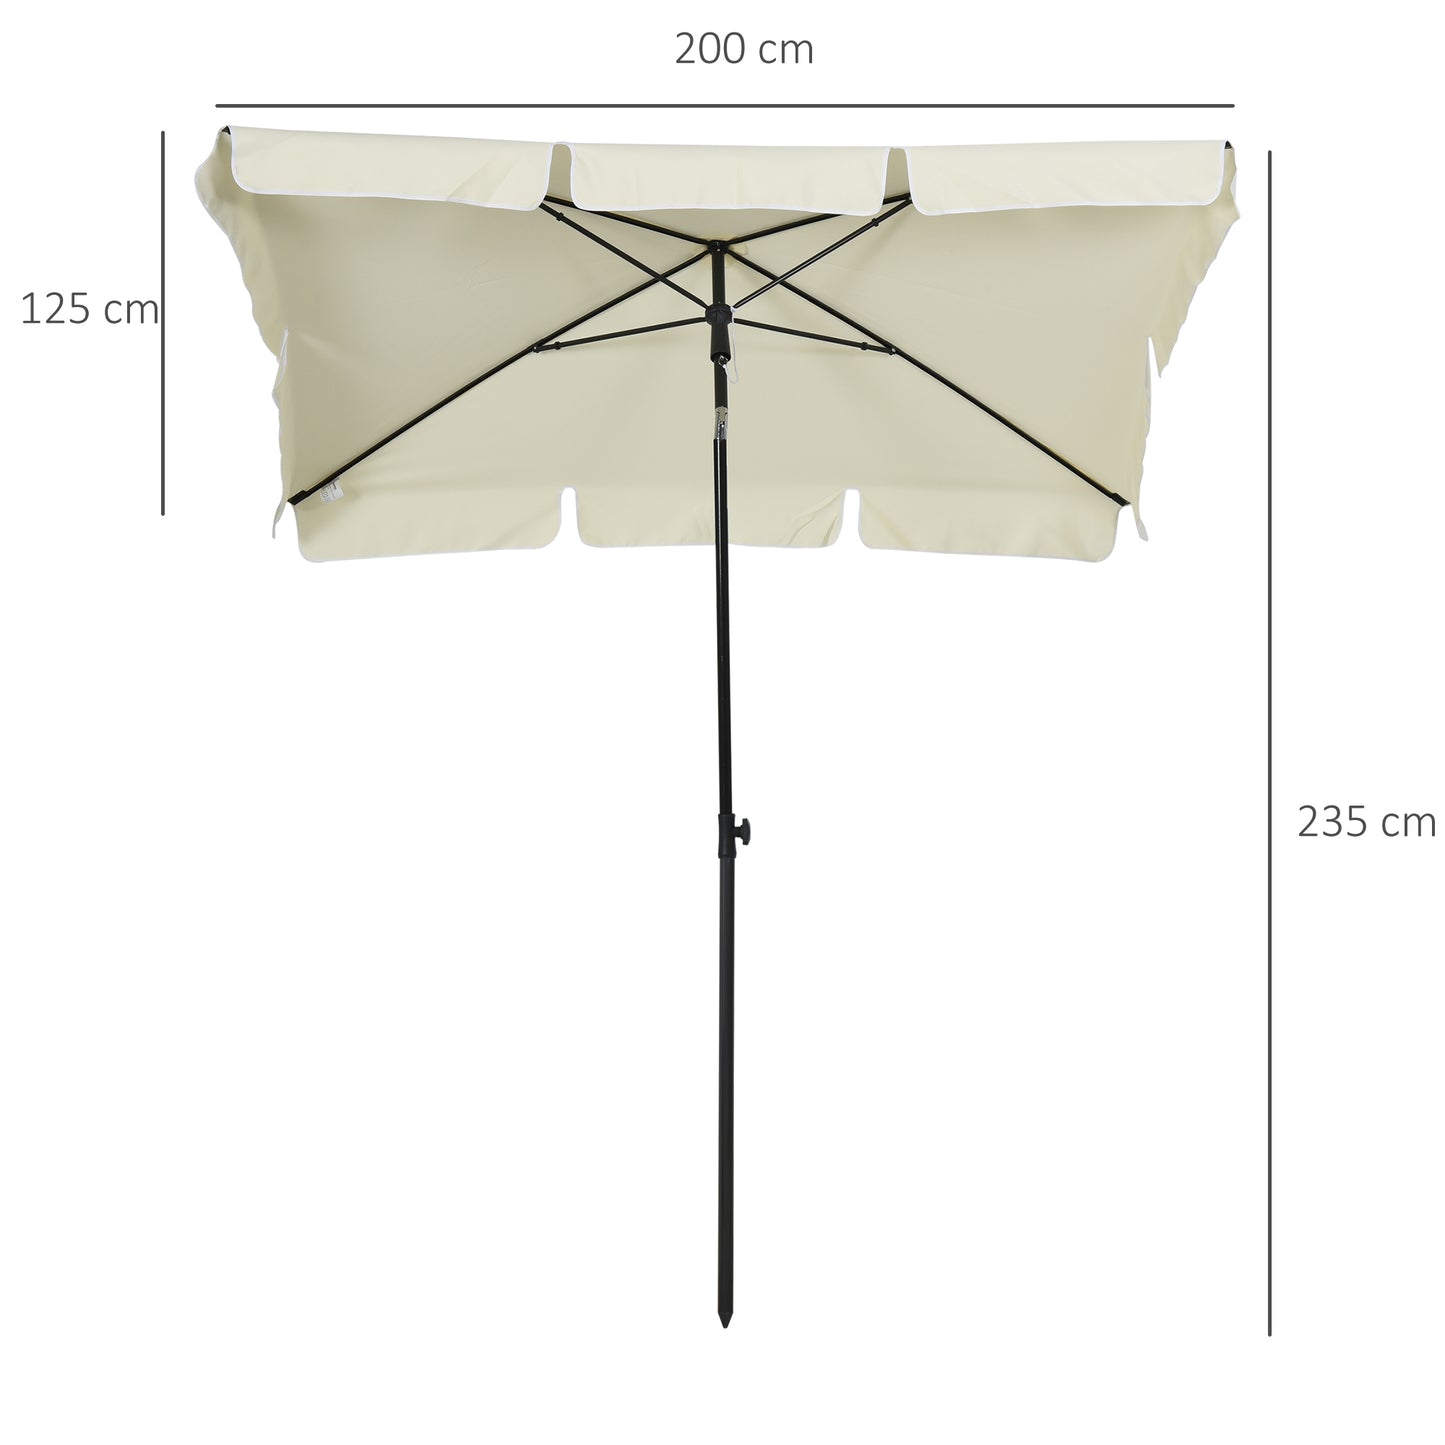 Outsunny Aluminum Umbrella Parasol-Cream